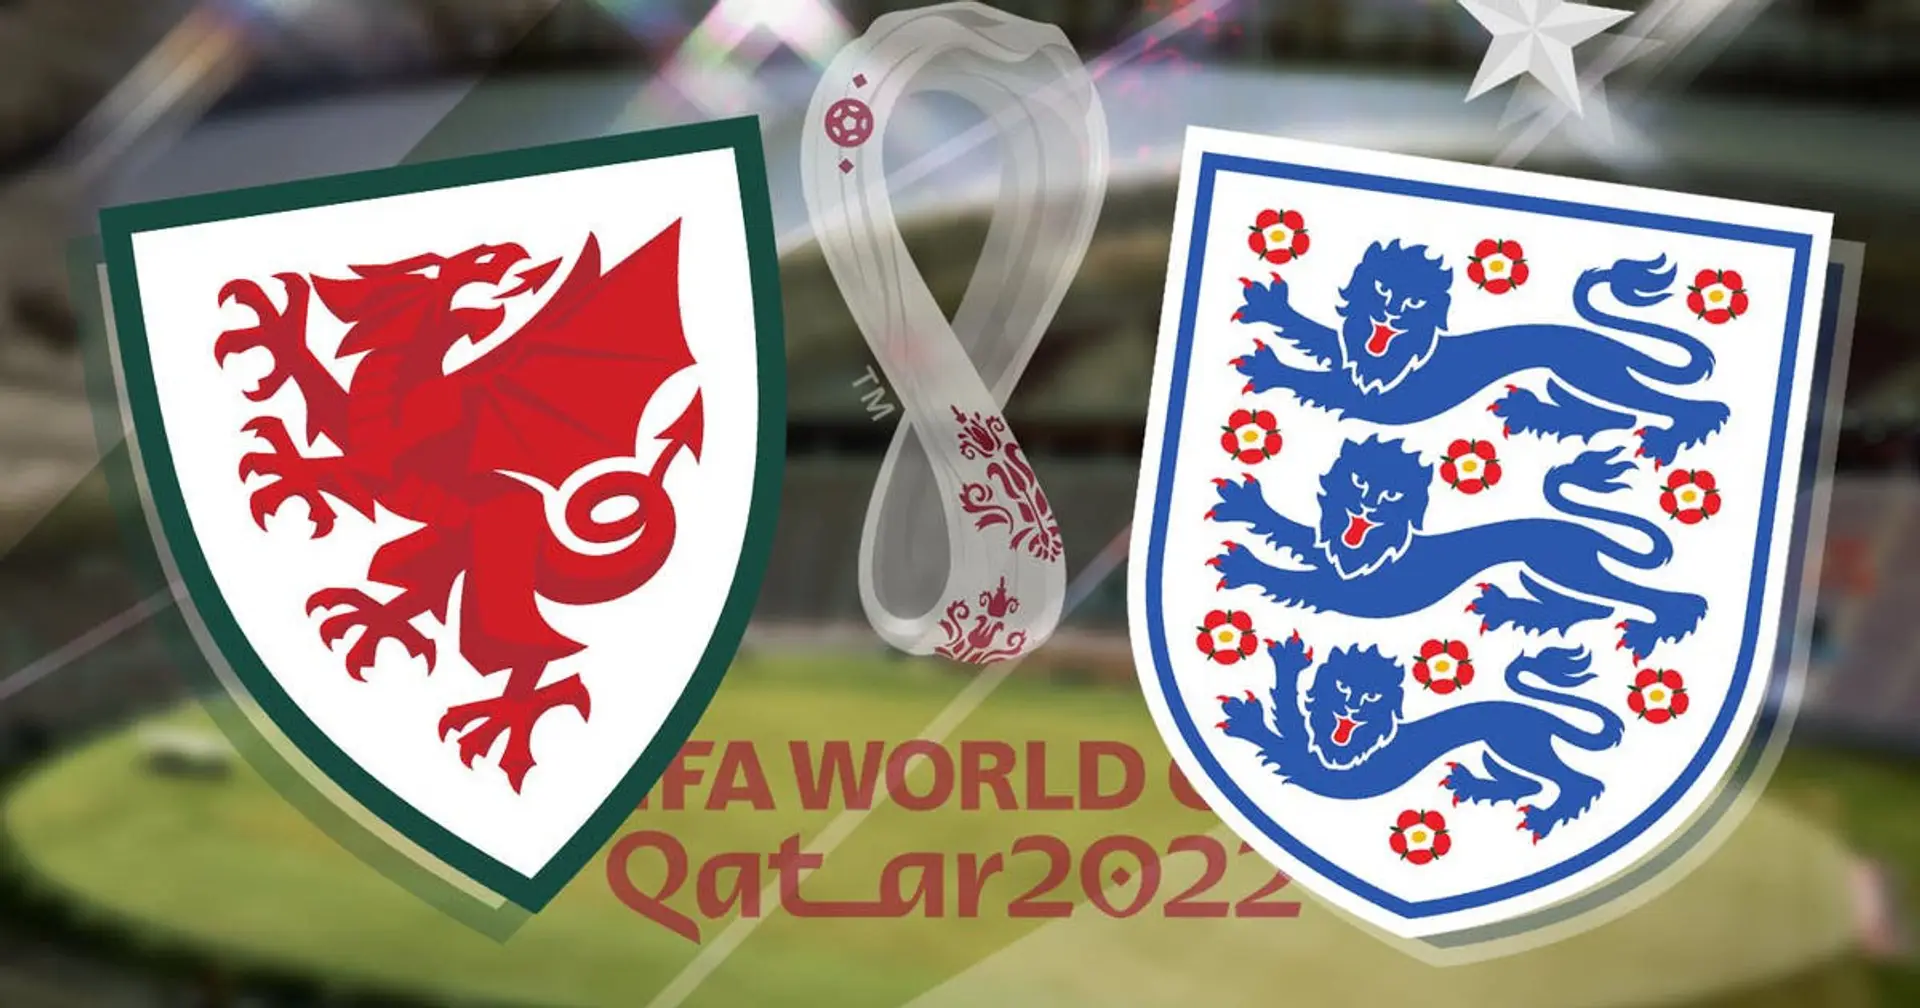 Inglaterra vs Gales: se revelan las alineaciones oficiales de los equipos para el choque de la Copa del Mundo